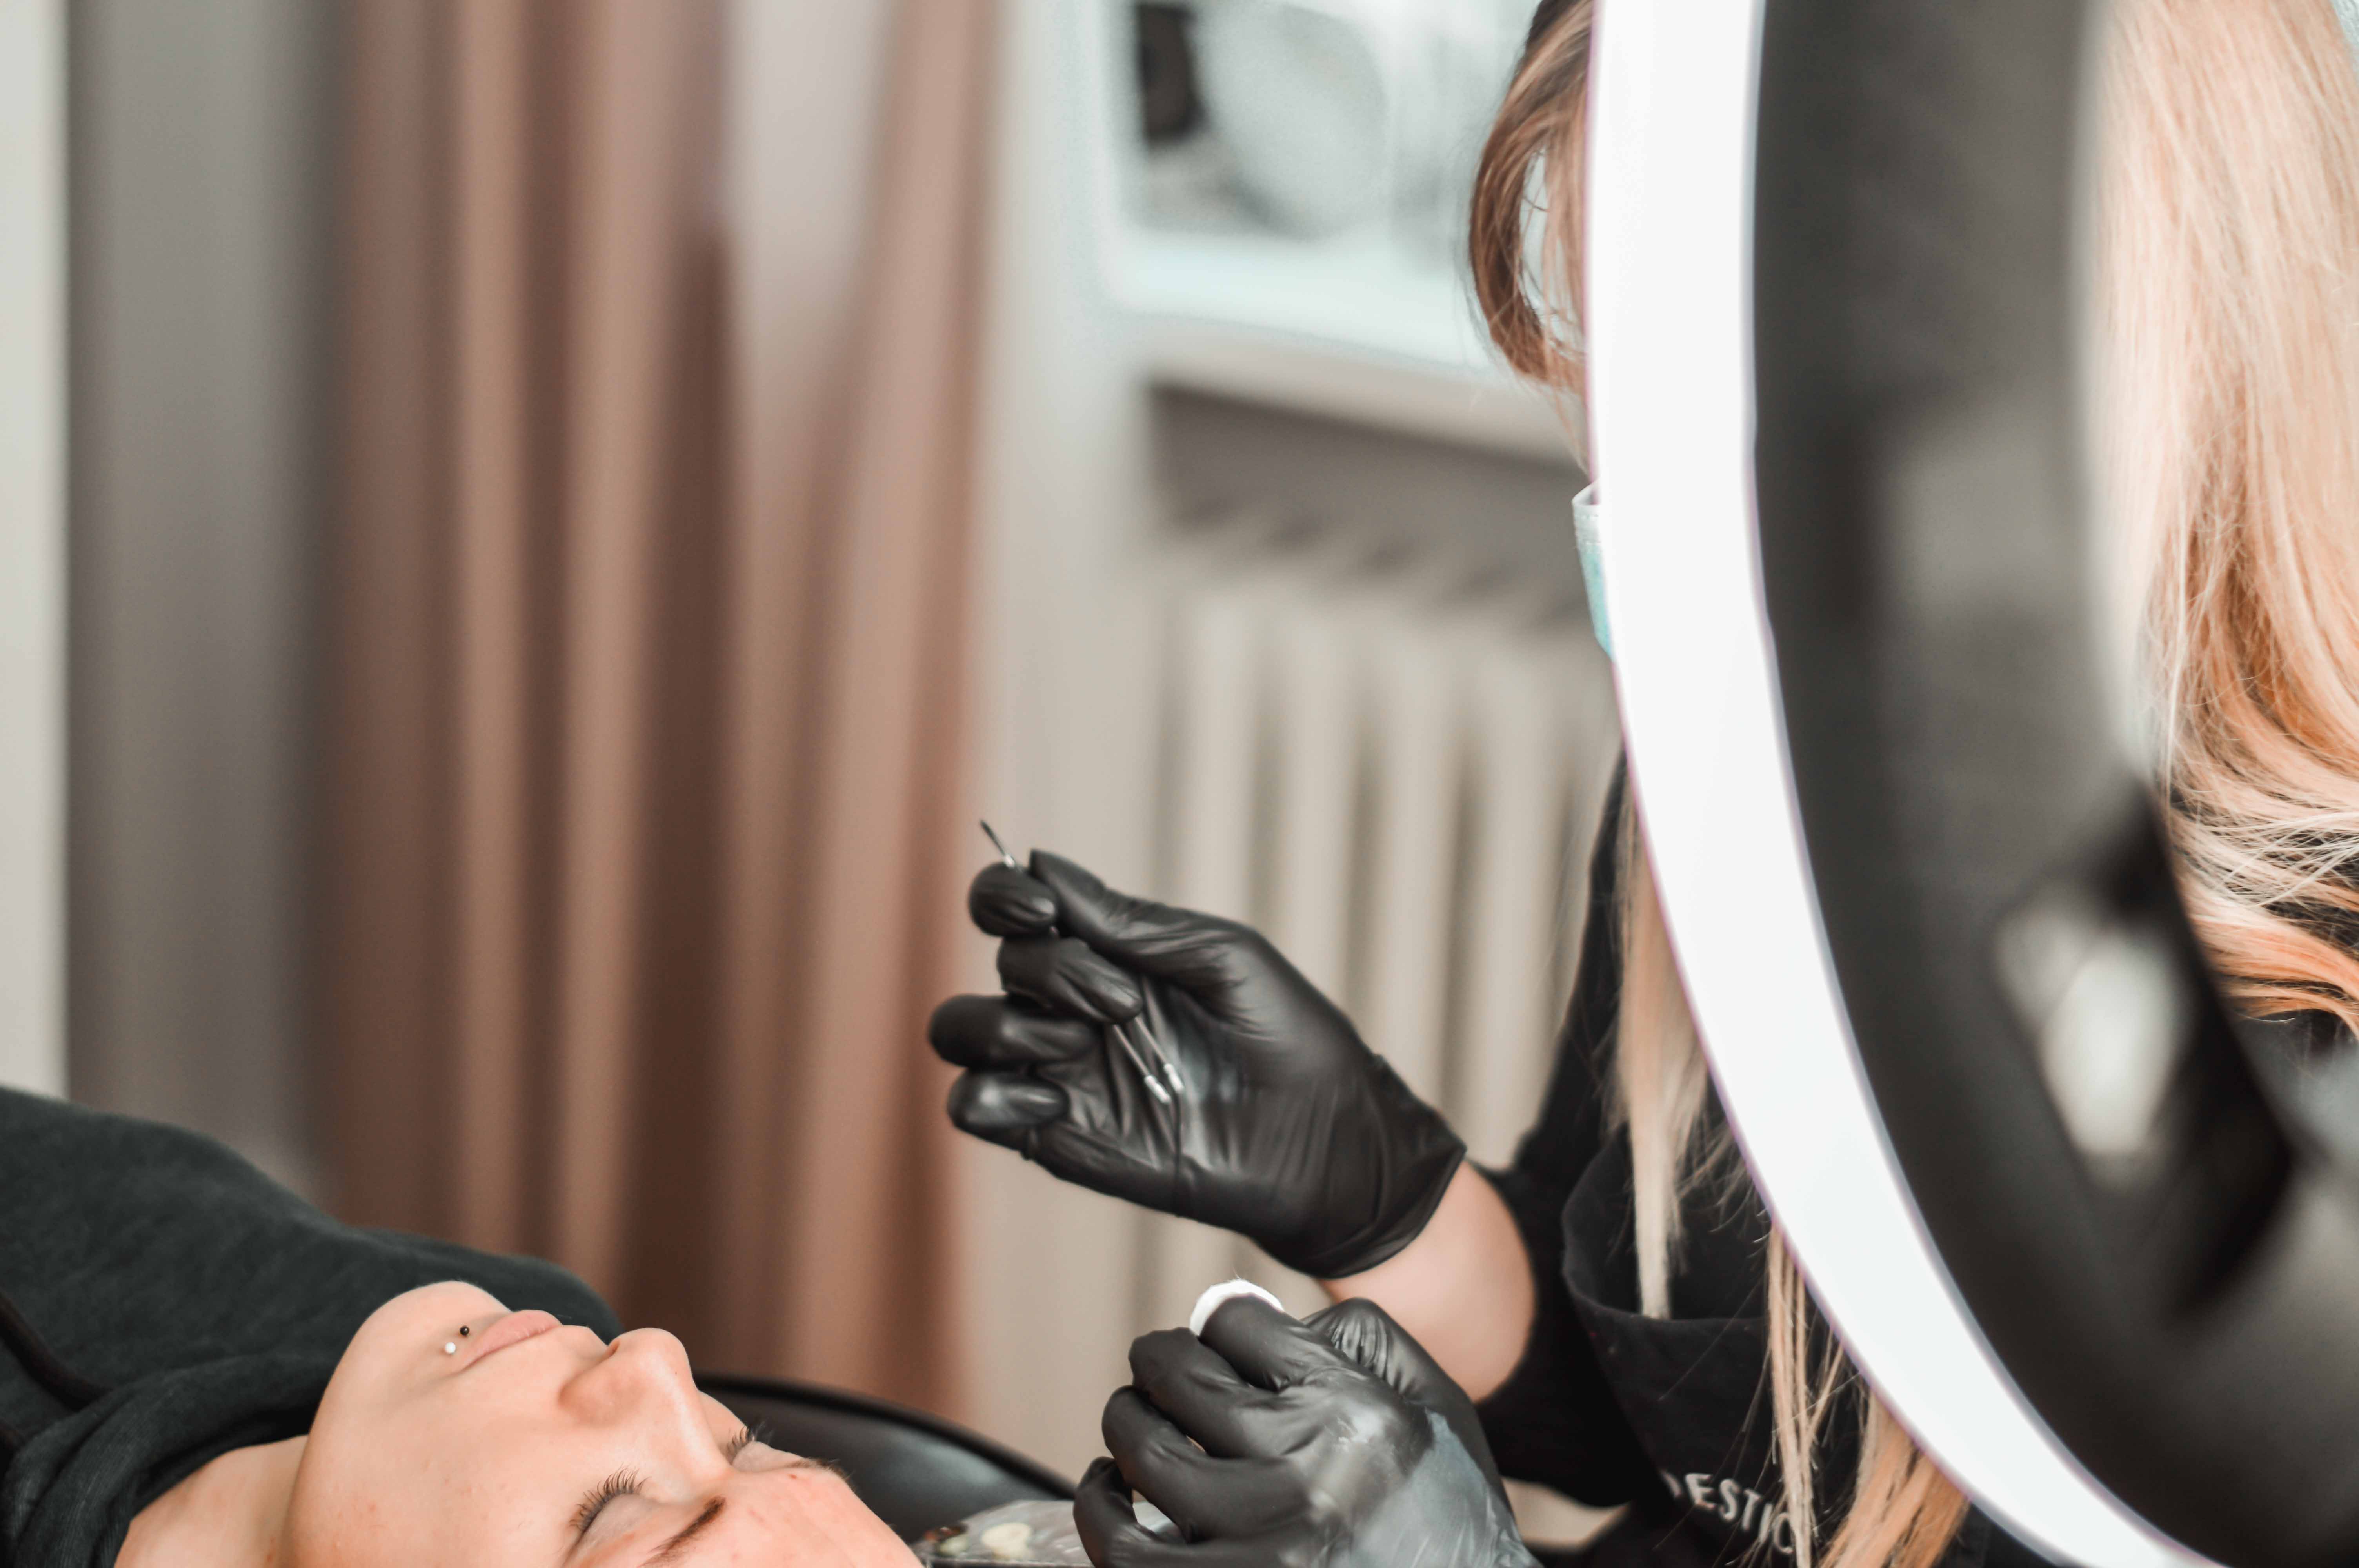 makijaż permanentny brwi - efekt przed i po, cena, ile się utrzymuje, czy konieczna jest korekta, salon na podkarpaciu 